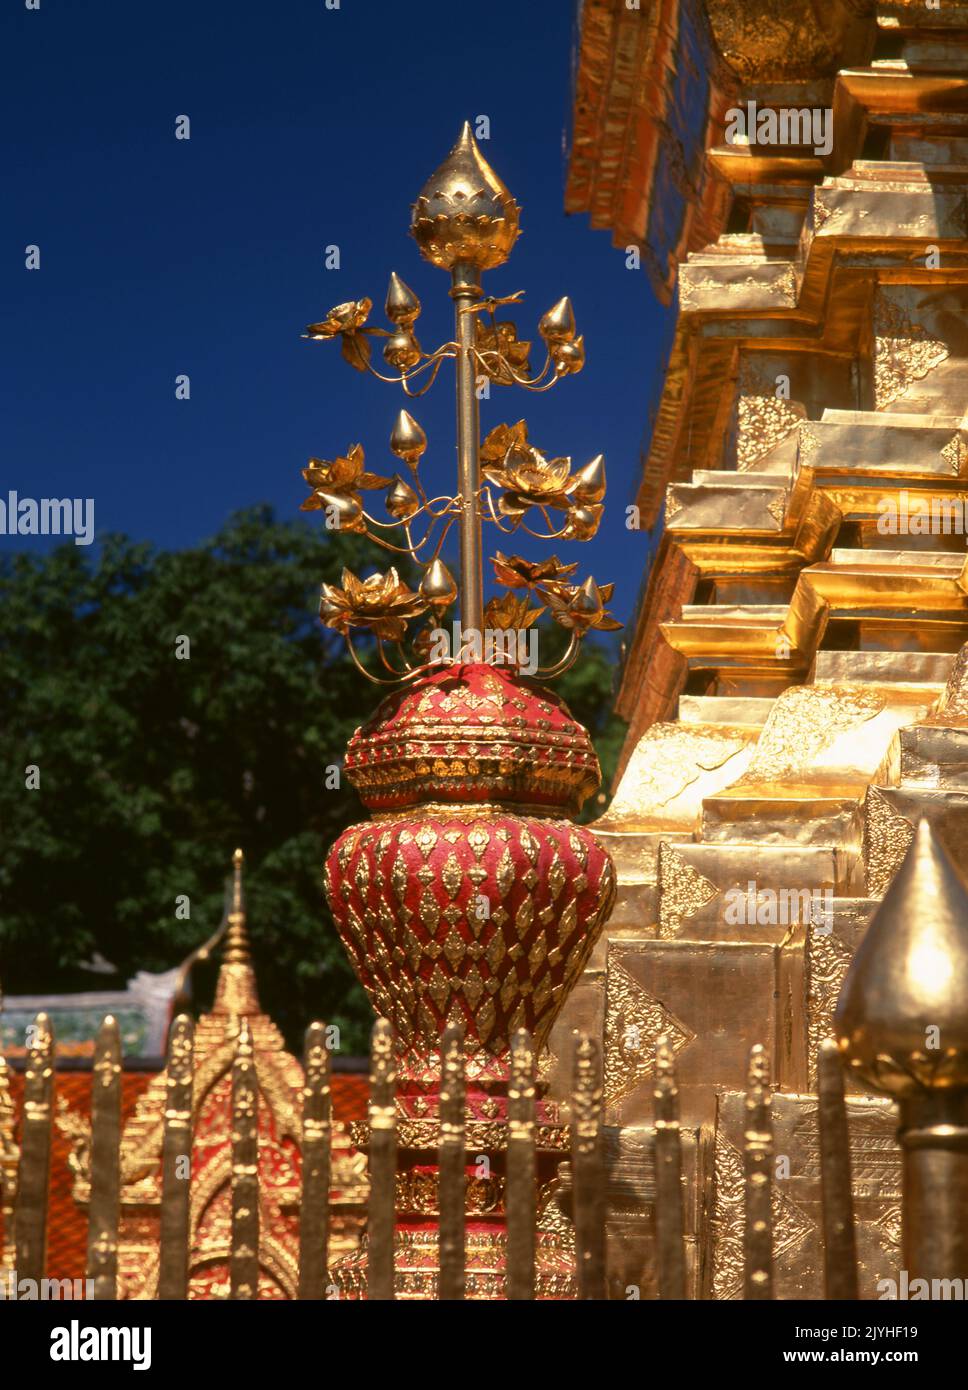 Thailandia: Wat Phrathat Doi Suthep, un tempio buddista Theravada situato sul Doi Suthep (montagna Suthep), che domina la città di Chiang mai. Il magnifico Chedi dorato, che risale al 16th ° secolo, offre superbe vedute attraverso la Valle di Chiang mai fino al fiume Ping. Re Mengrai fondò la città di Chiang mai (che significa 'nuova città') nel 1296, e successe a Chiang Rai come capitale del regno Lanna. Foto Stock